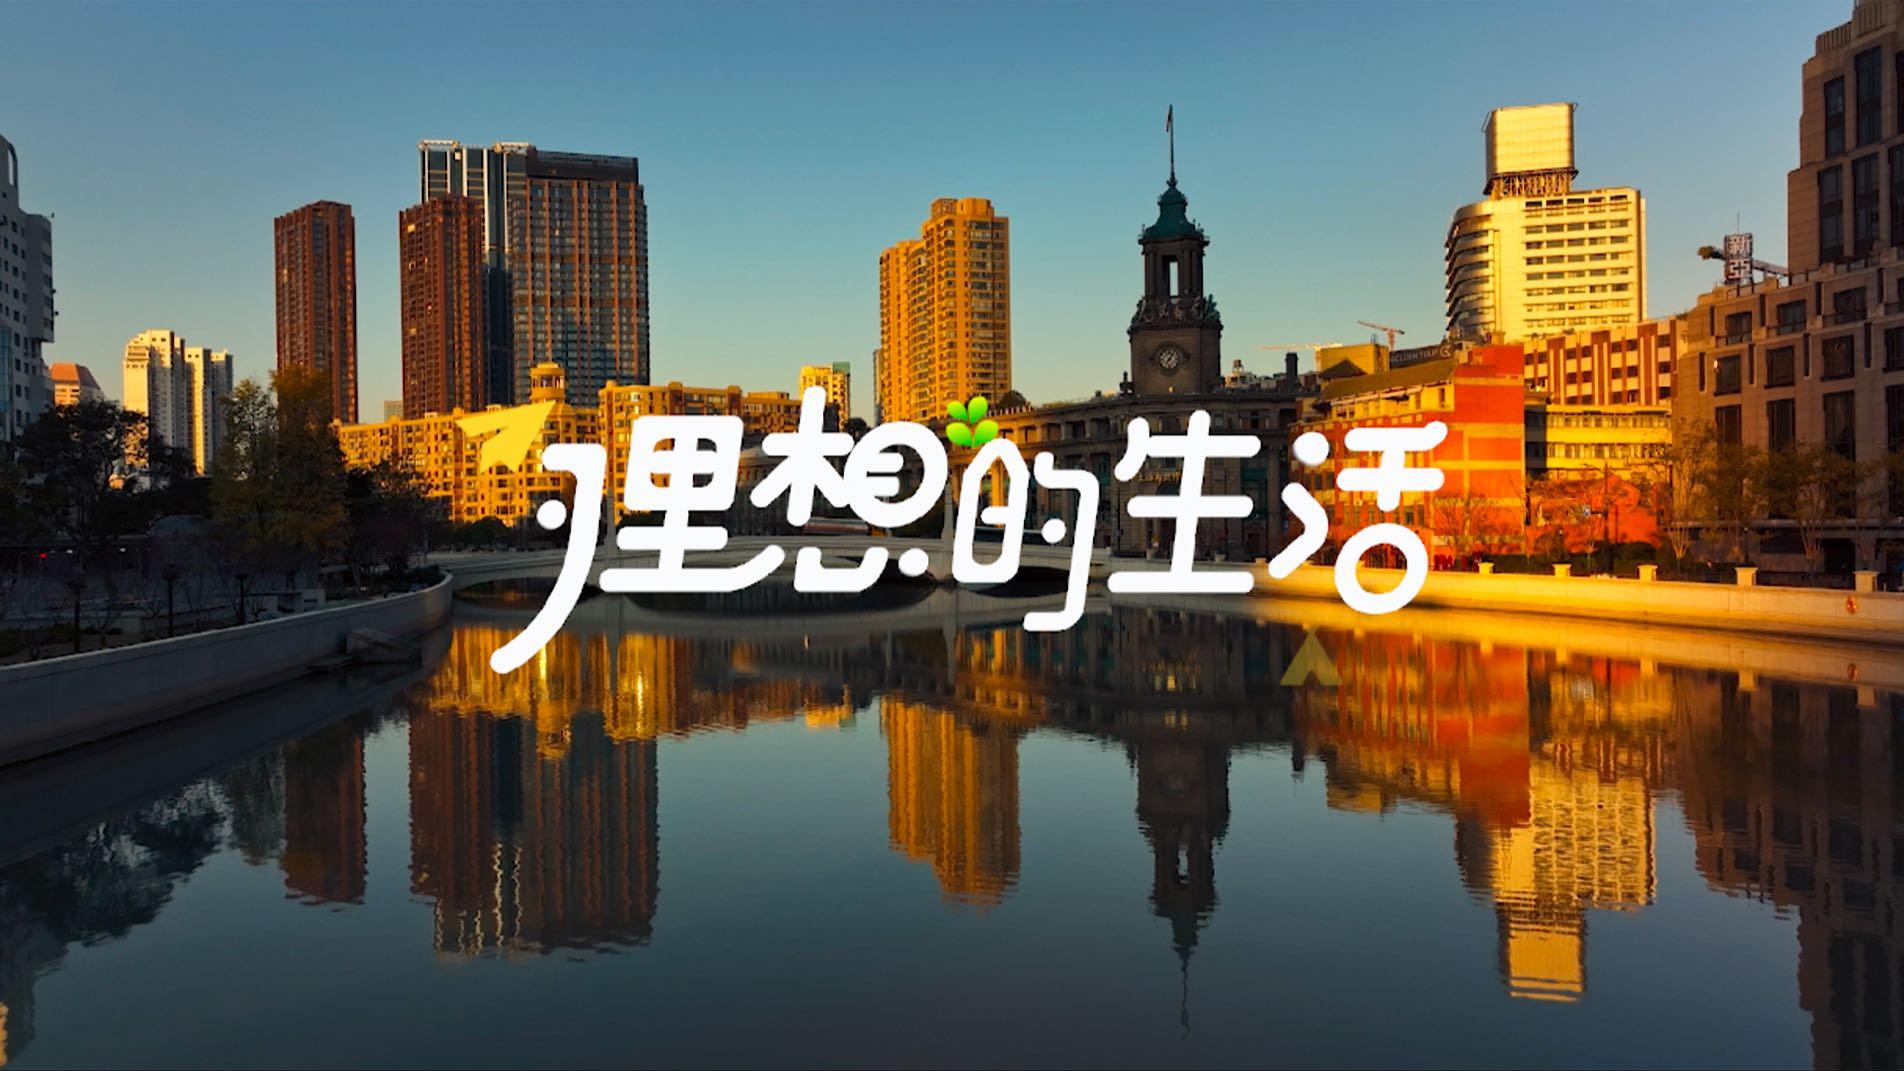 融创上海集团理想生活街头采访